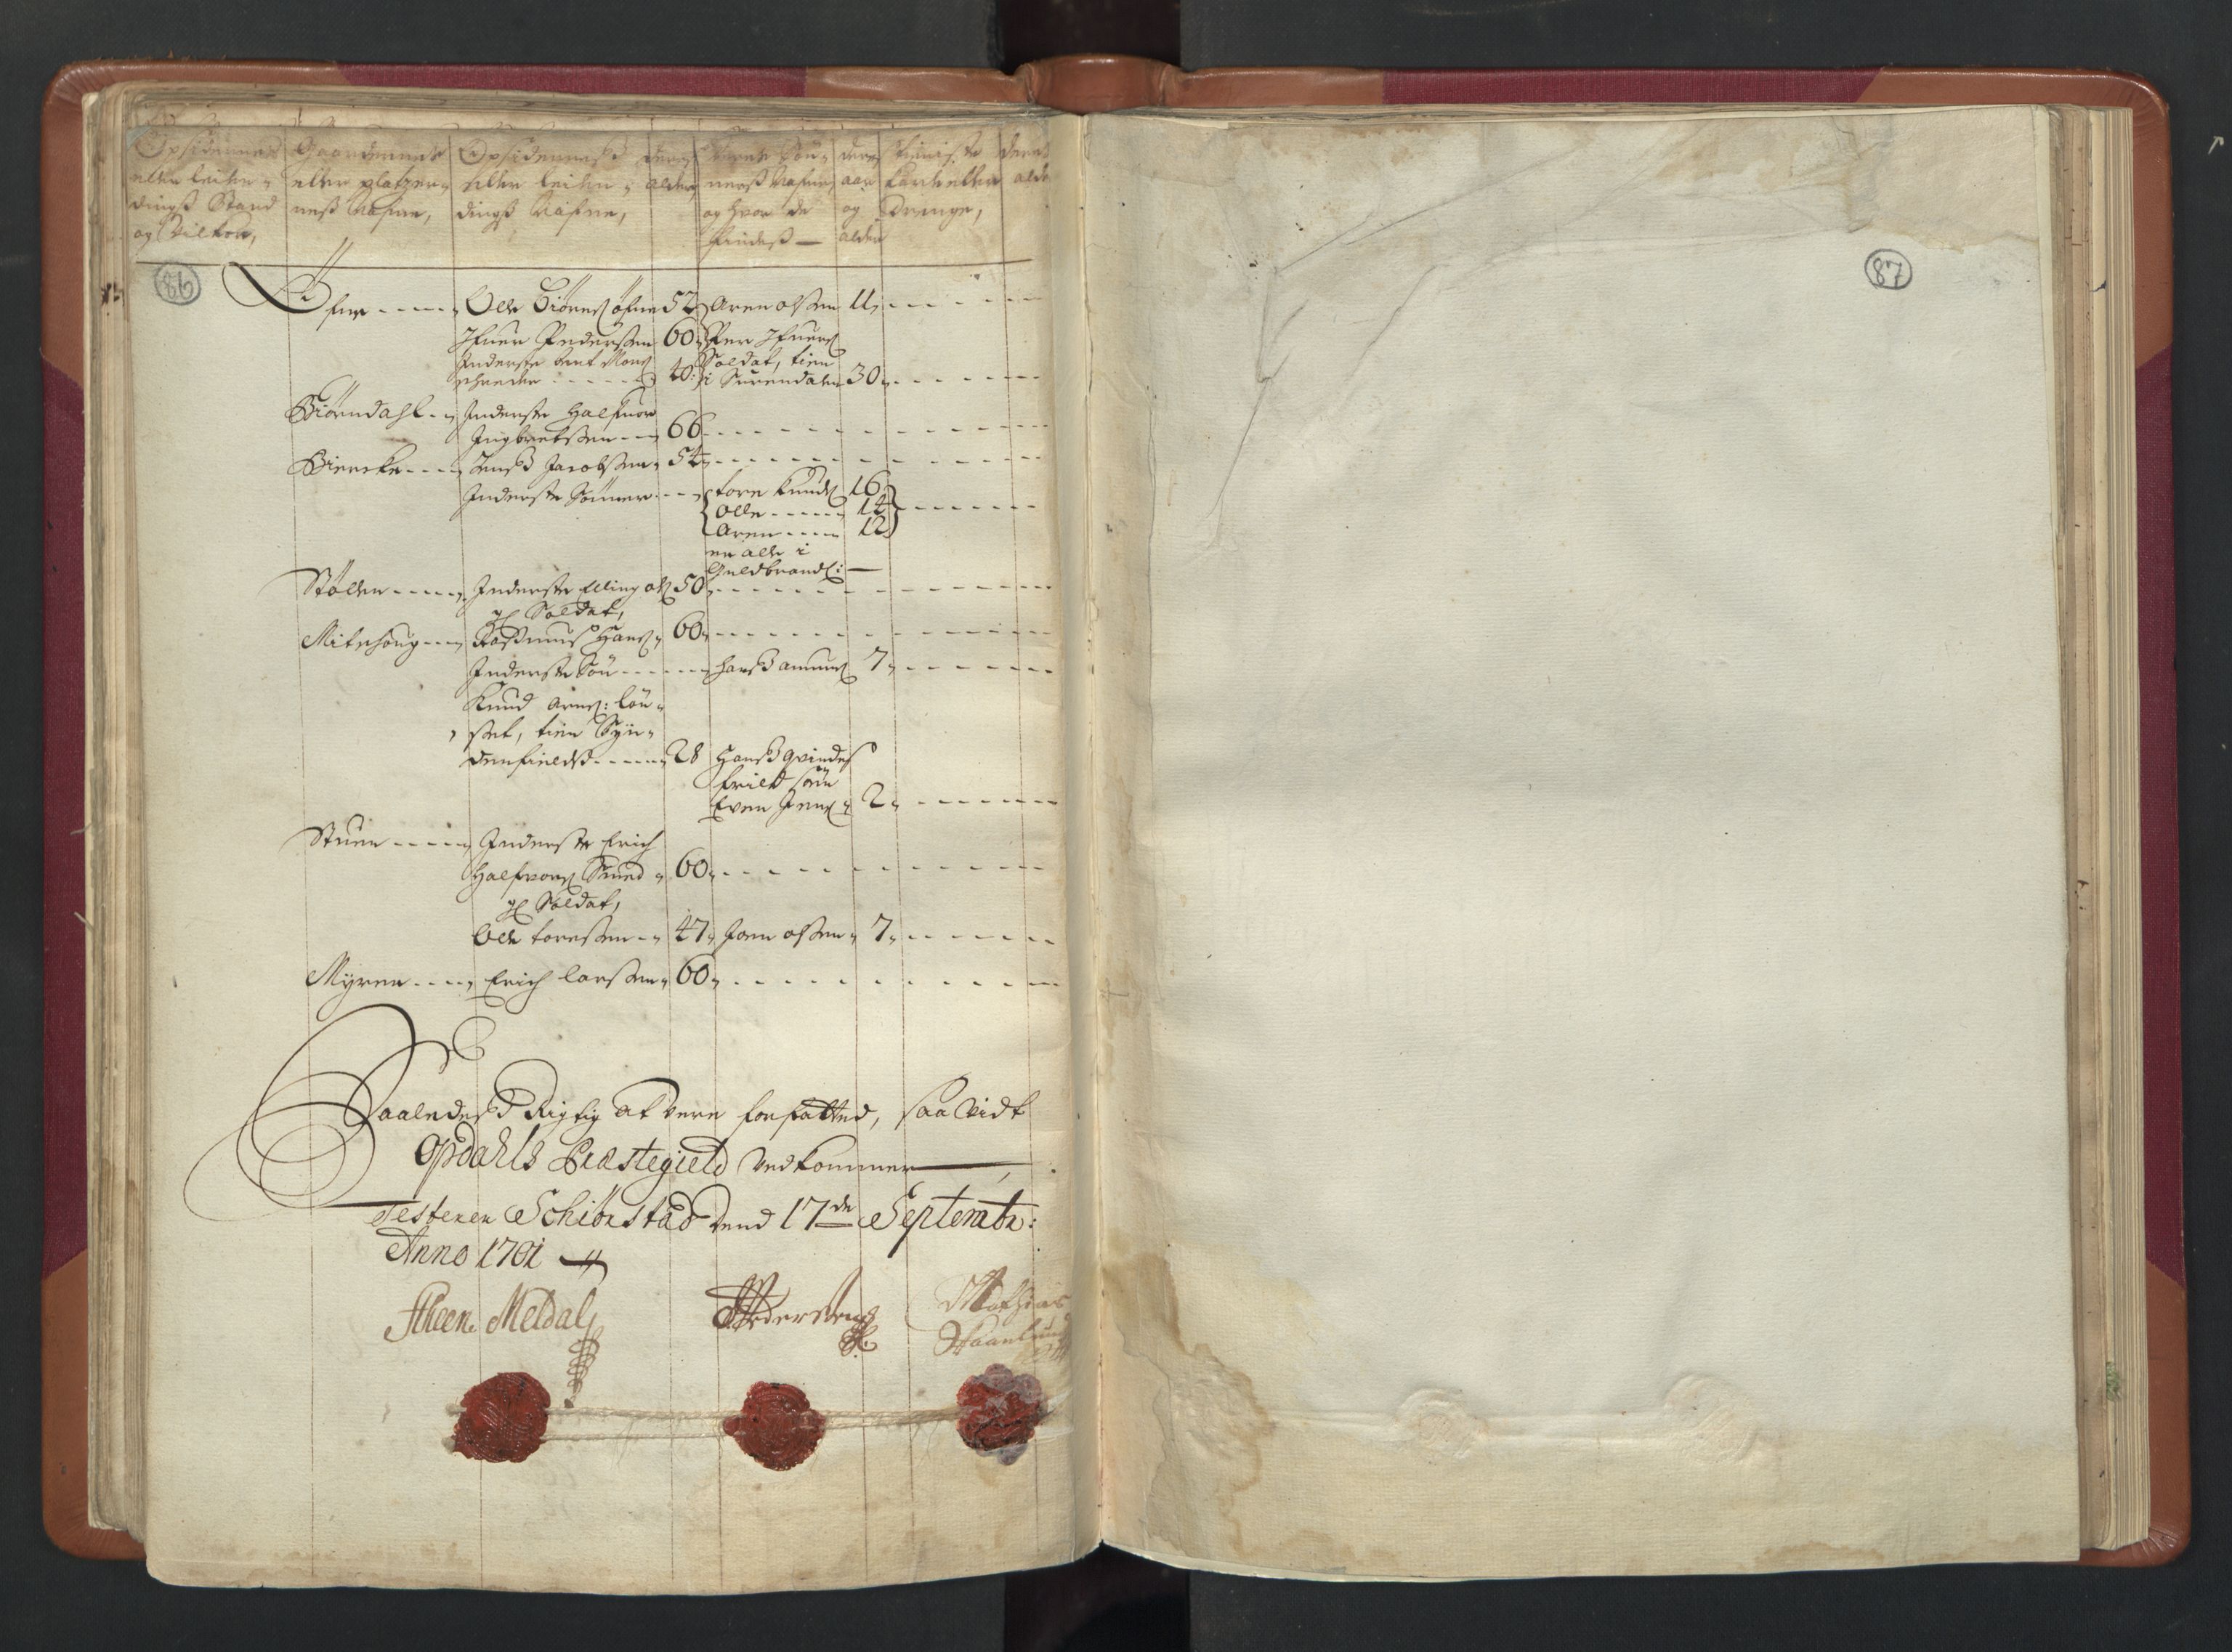 RA, Manntallet 1701, nr. 13: Orkdal fogderi og Gauldal fogderi med Røros kobberverk, 1701, s. 86-87